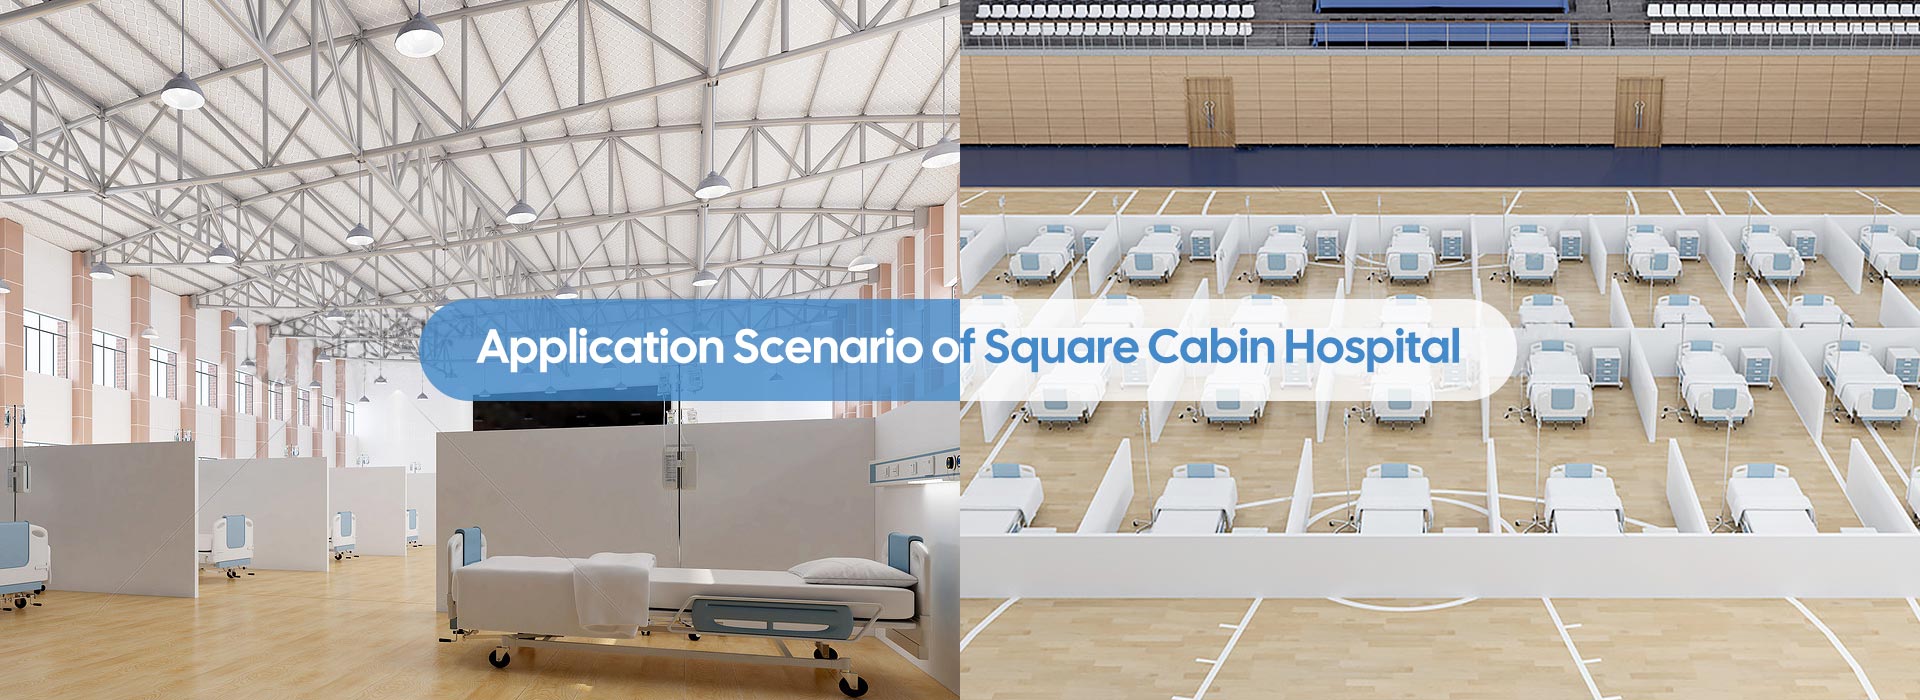 Application Scenario of Square Cabin Hospital